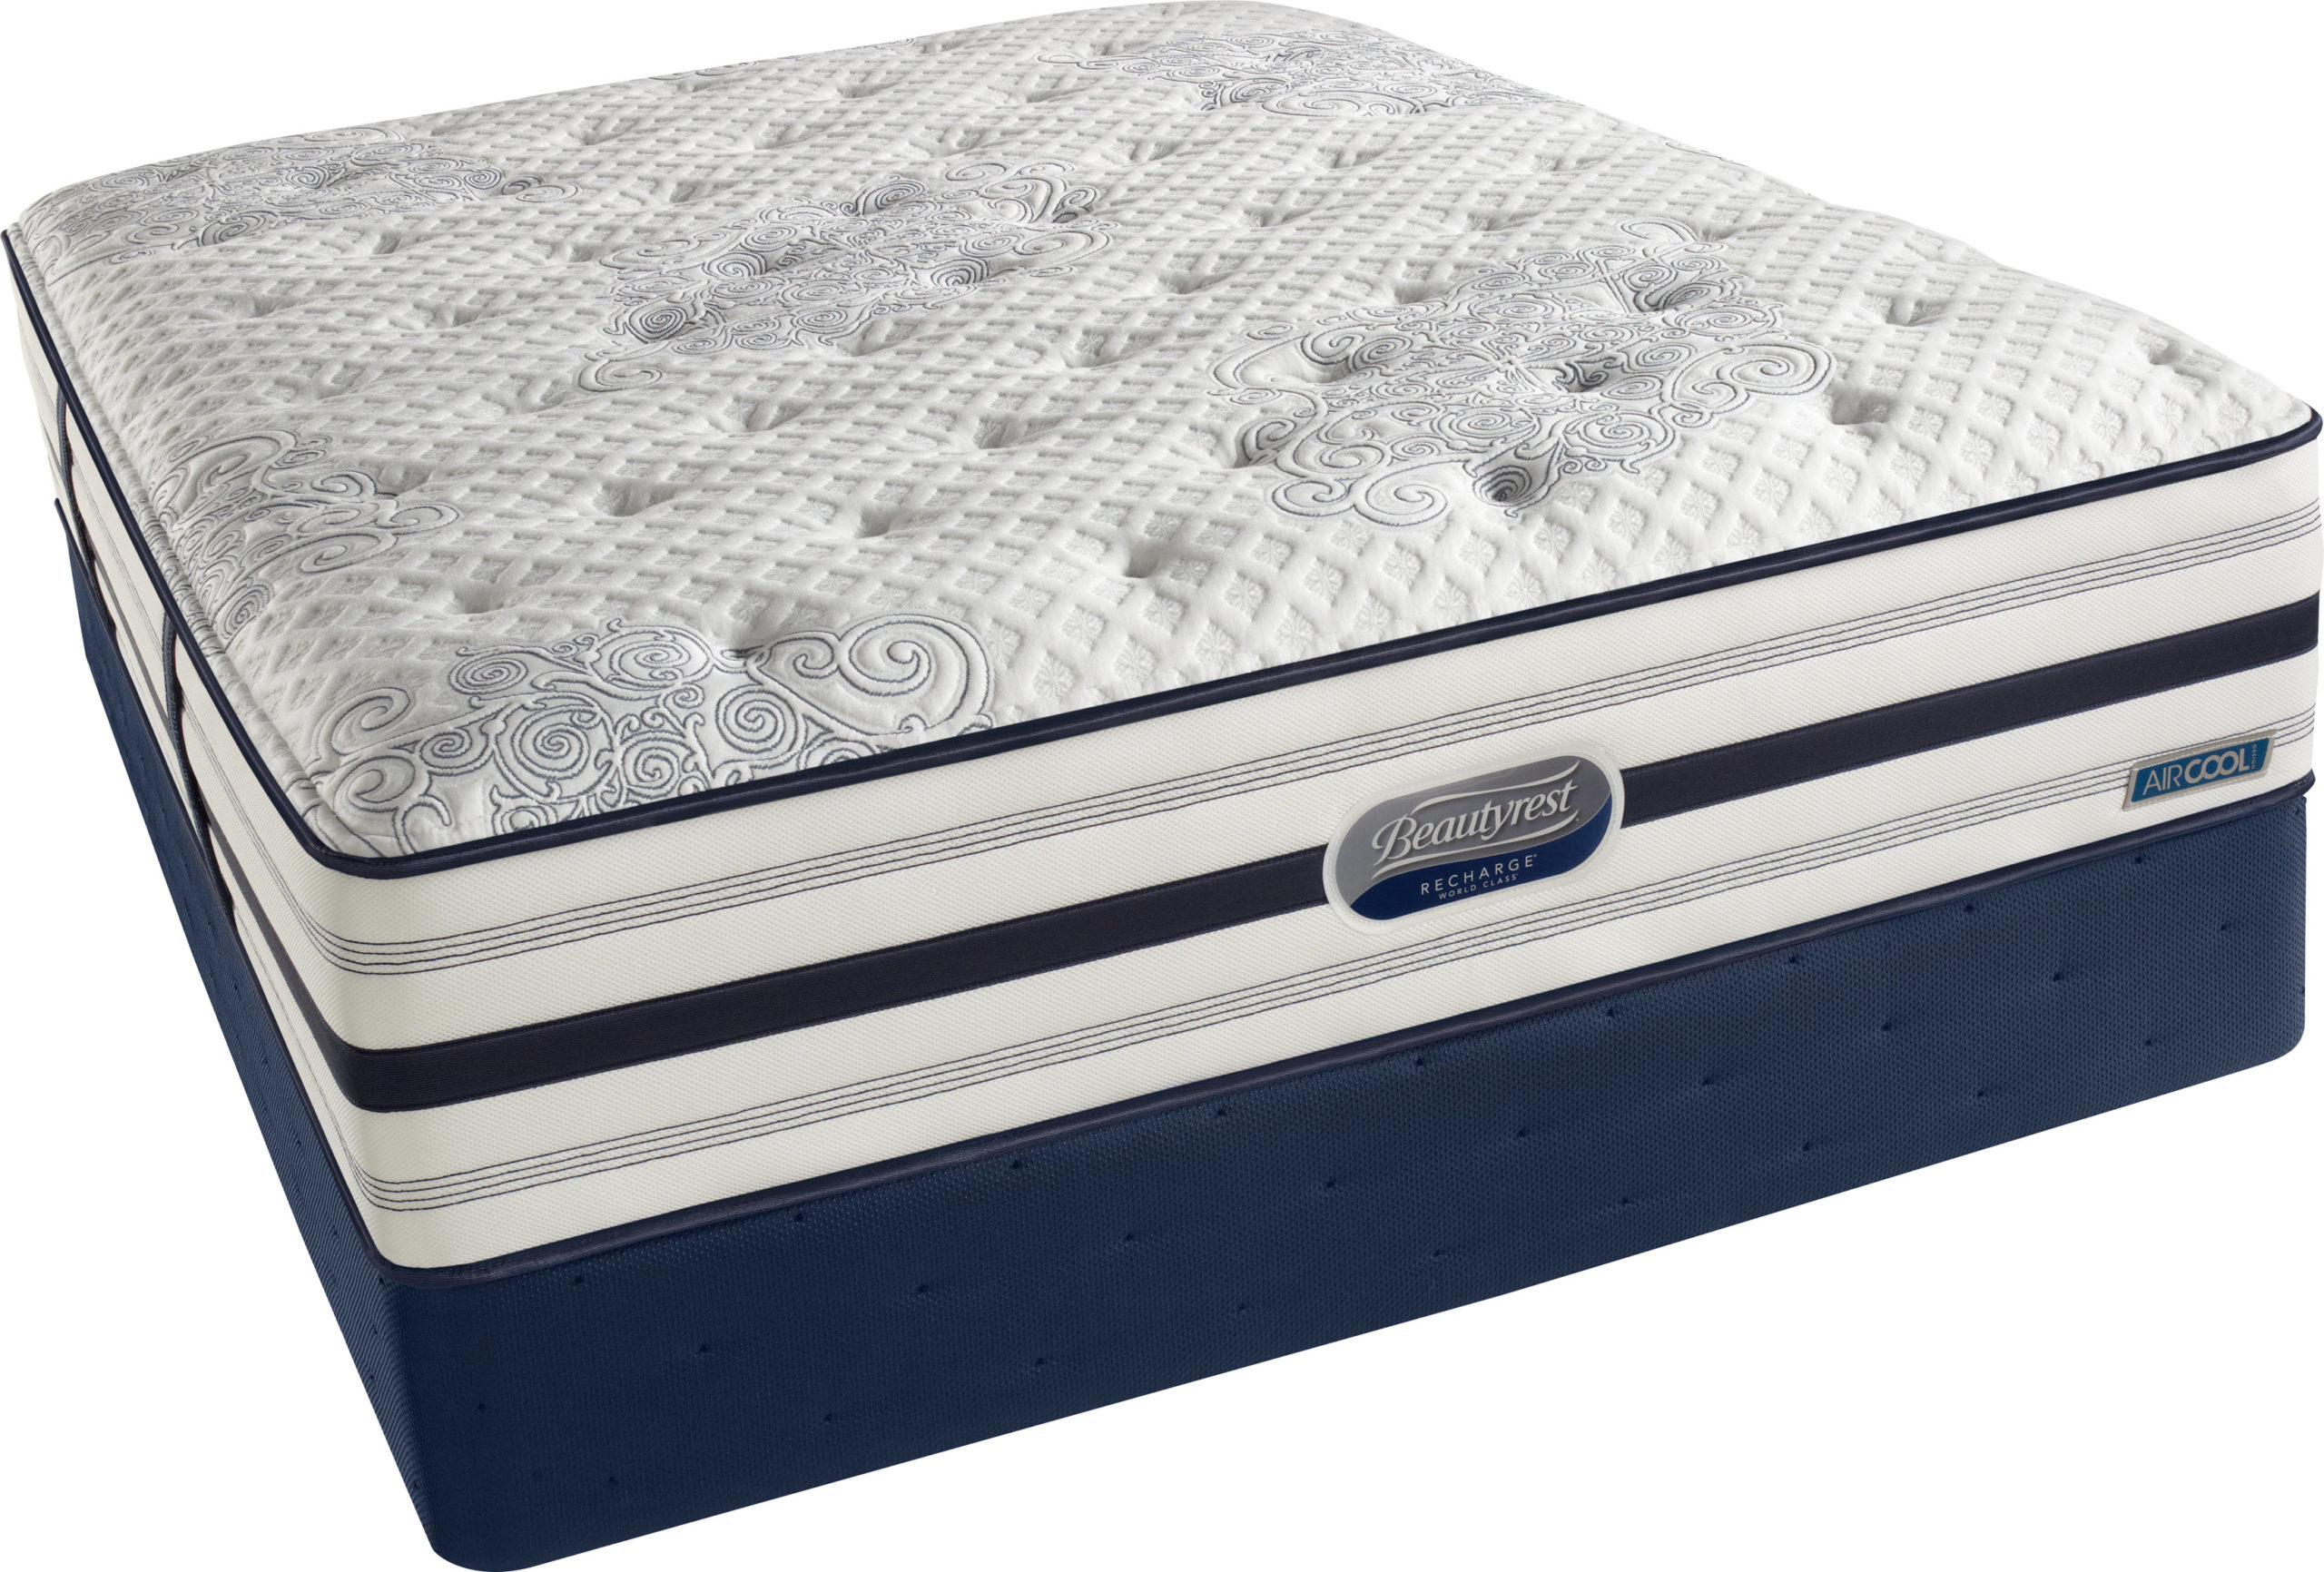 beautyrest world class grandeur medium queen mattress